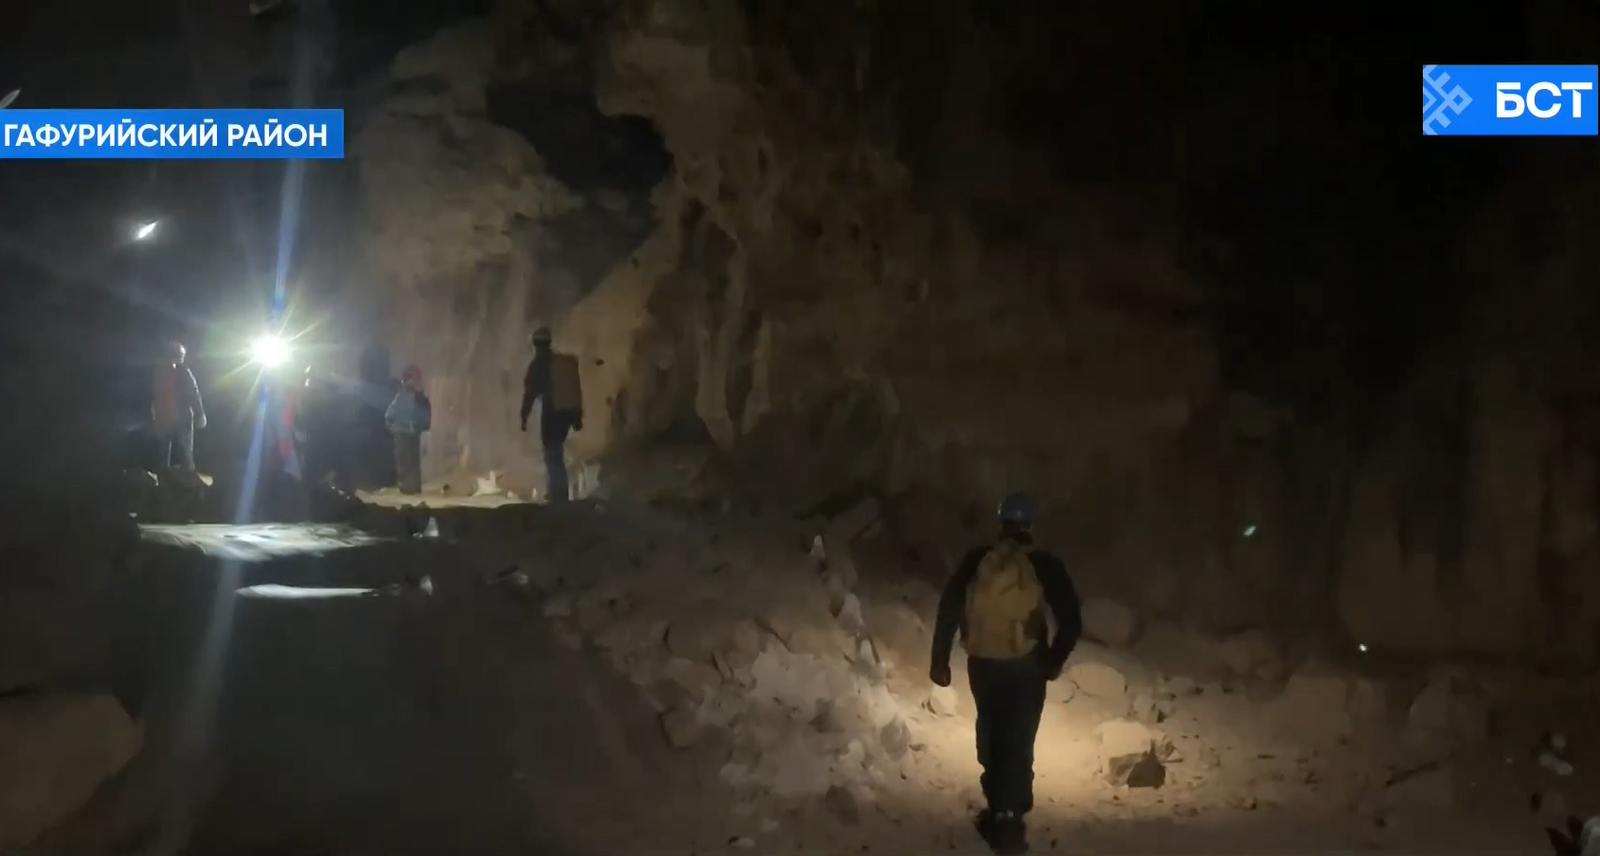 В Башкирии спелеологи обнаружили, что самые известные пещеры Гафурийского района имеют общий портал